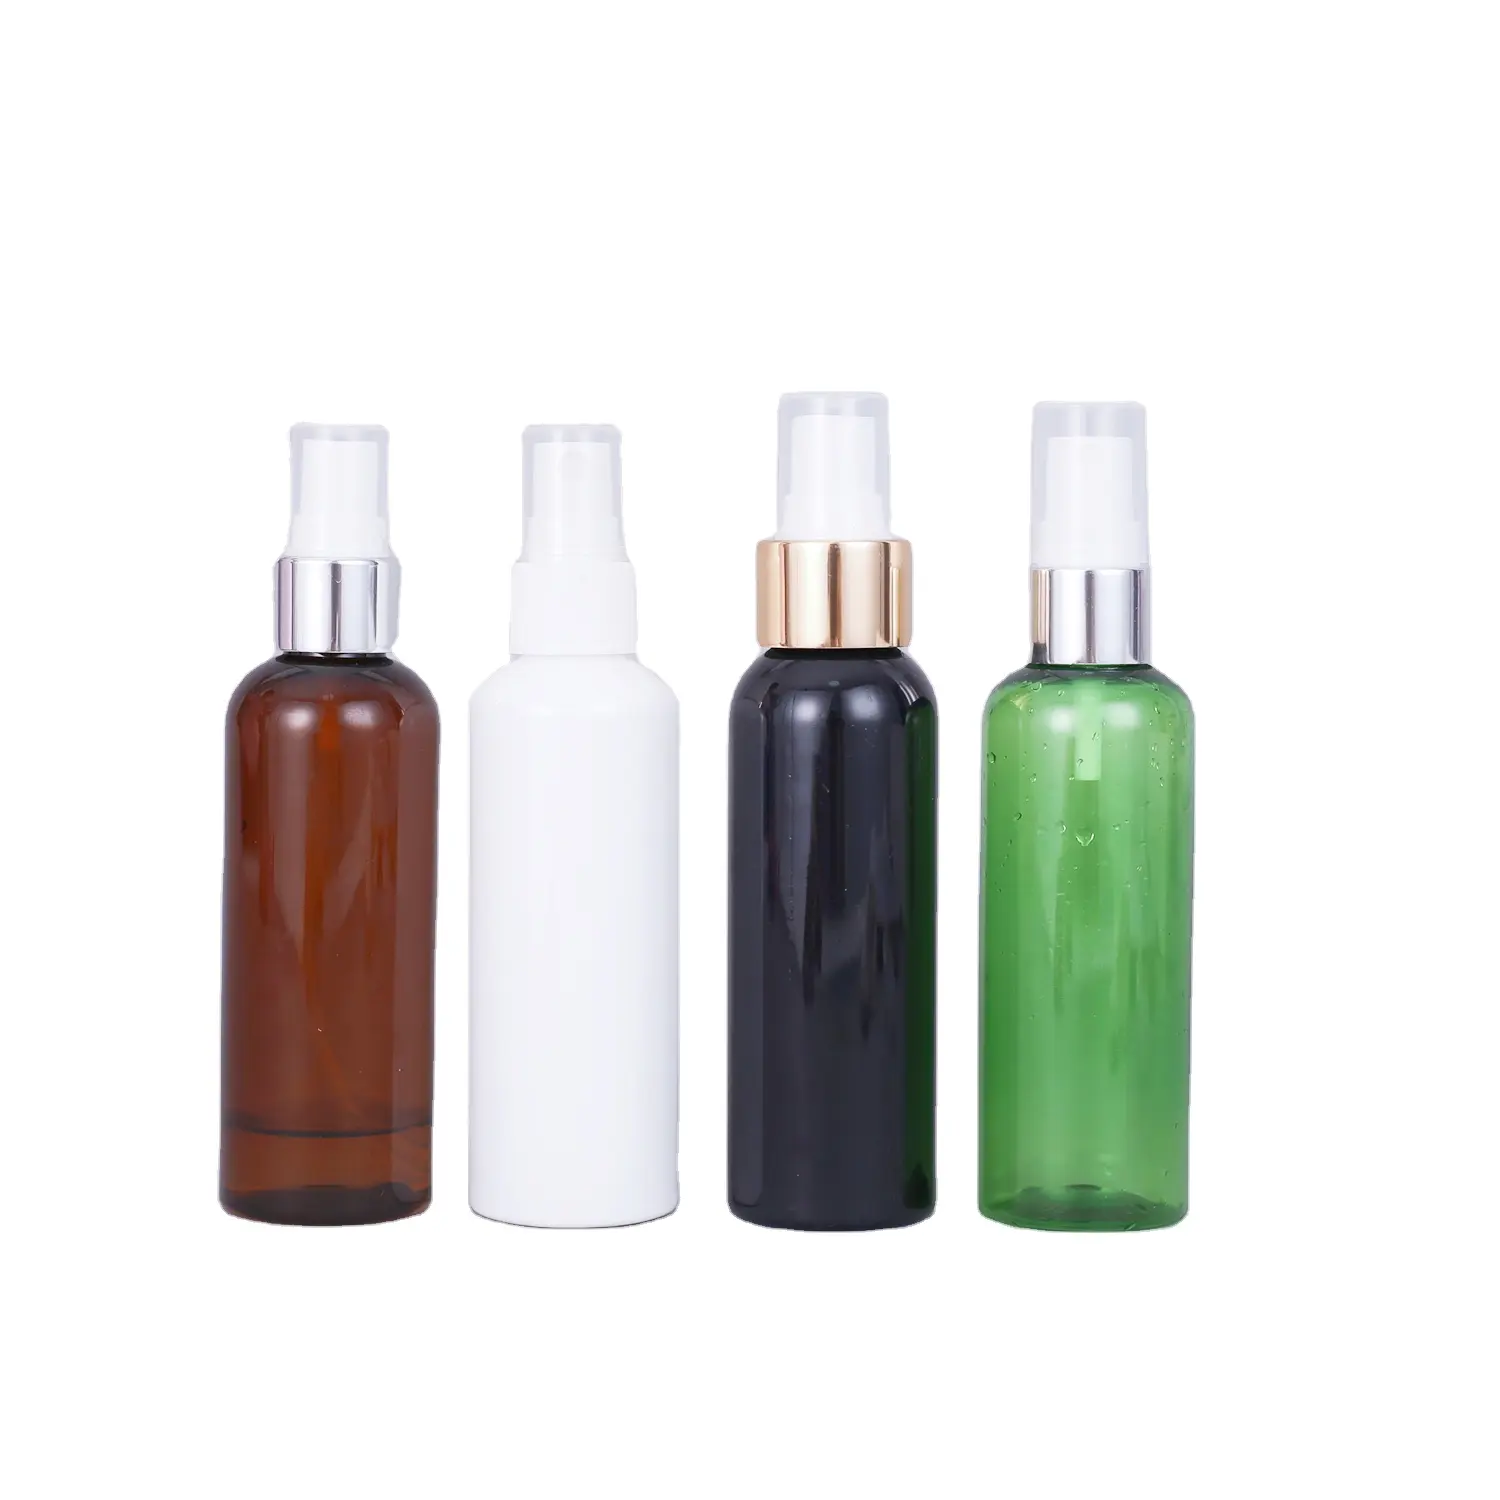 Bottiglie di Shampoo in vendita calda vuote 100ml 150ml 250ml 500ml contenitore in plastica PET con bottiglie di lozione per Gel per capelli con tappo superiore a disco